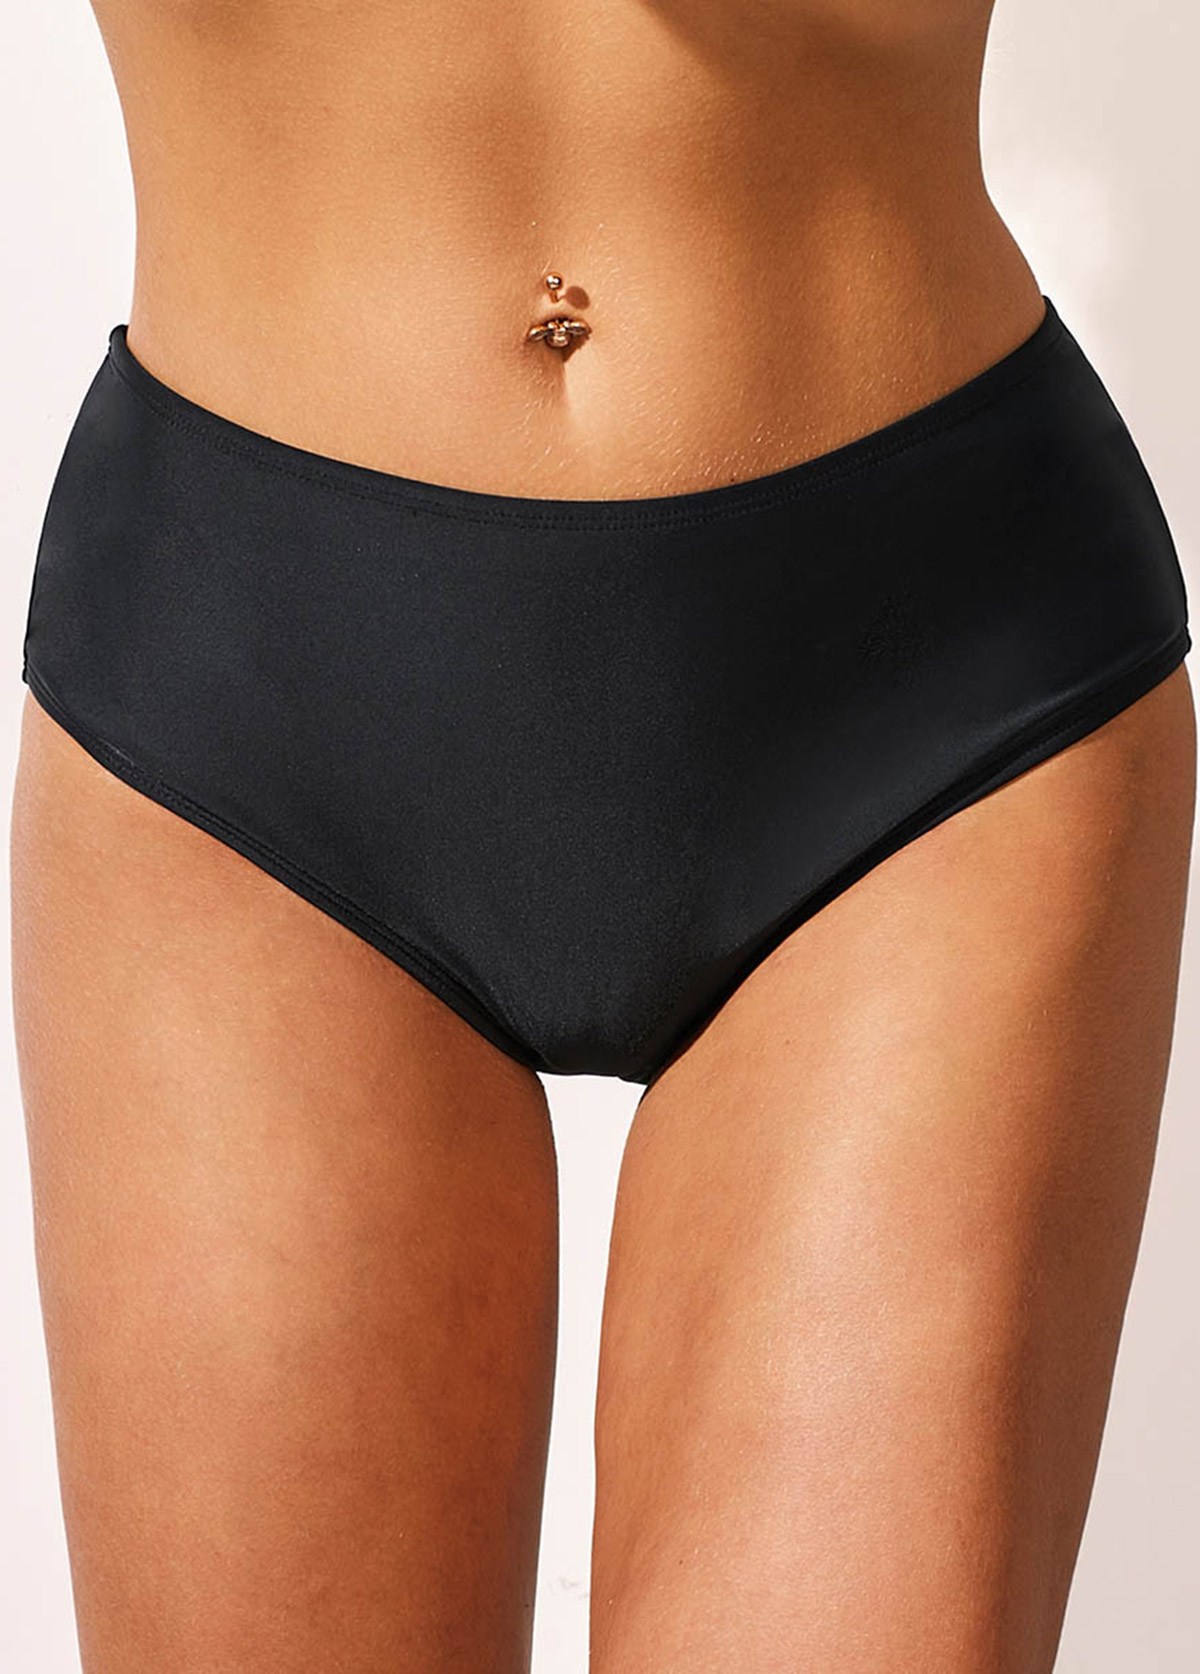 Buttock Swimwear Panty